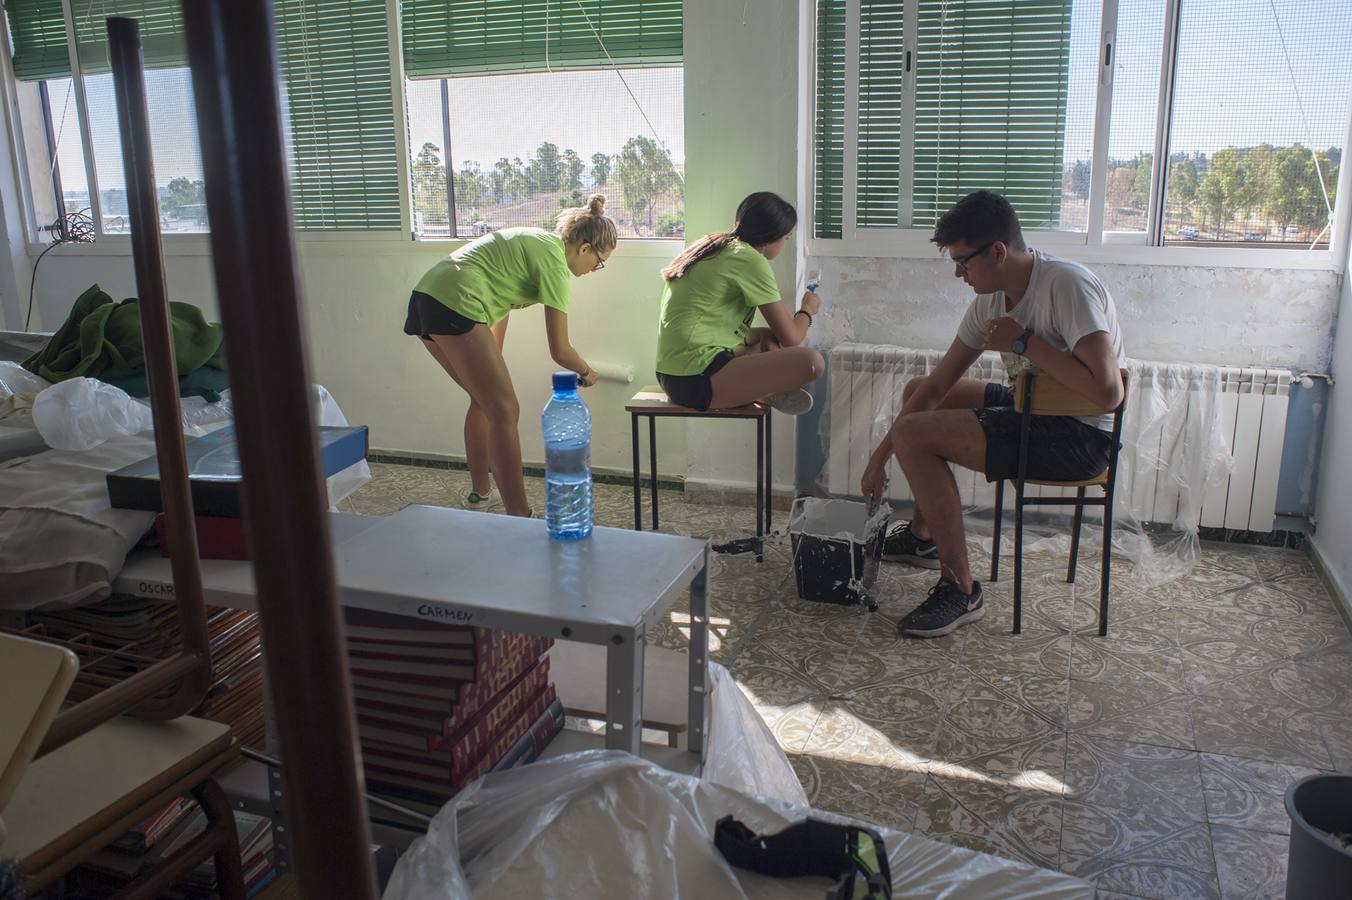 Los alumnos realizan tareas de reparación y mantenimiento del centro al tiempo que disfrutan de actividades socio-culturales